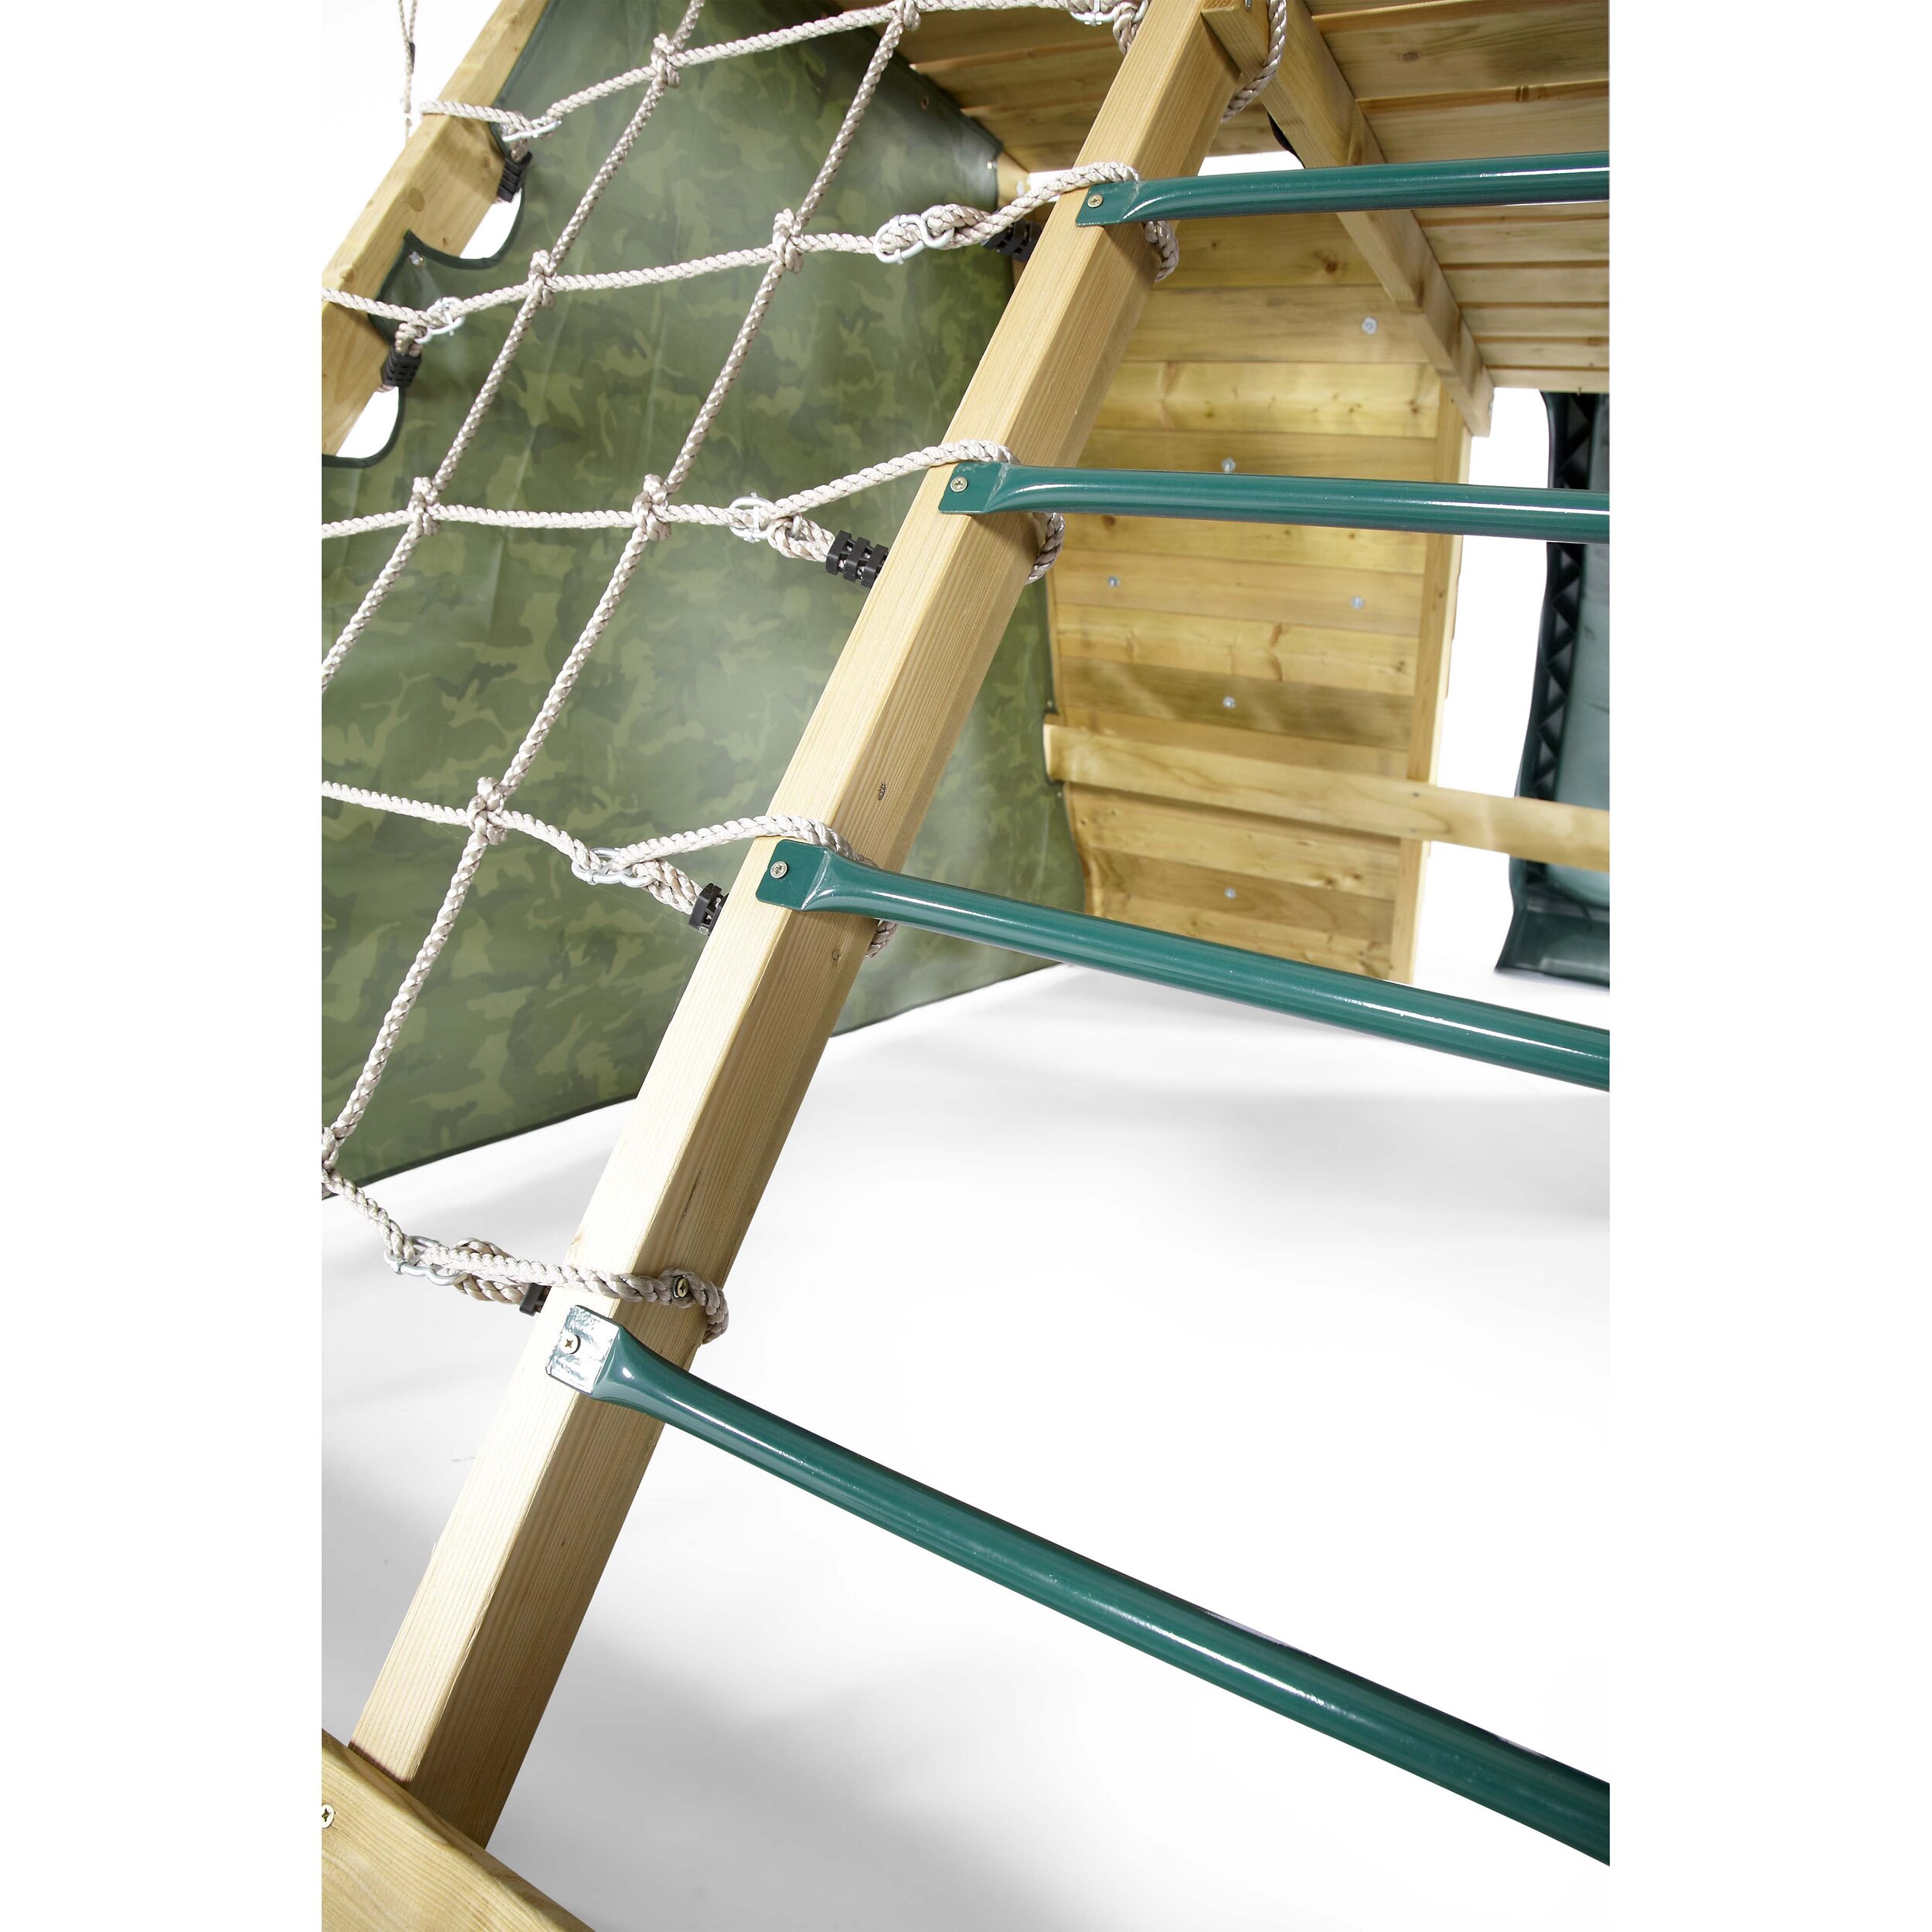 plum-pyramid-legno-centro-giochi-arrampicare-esterno-babylove2000-prodotto-dettaglio-rete-corda-scala-tenda.jpg